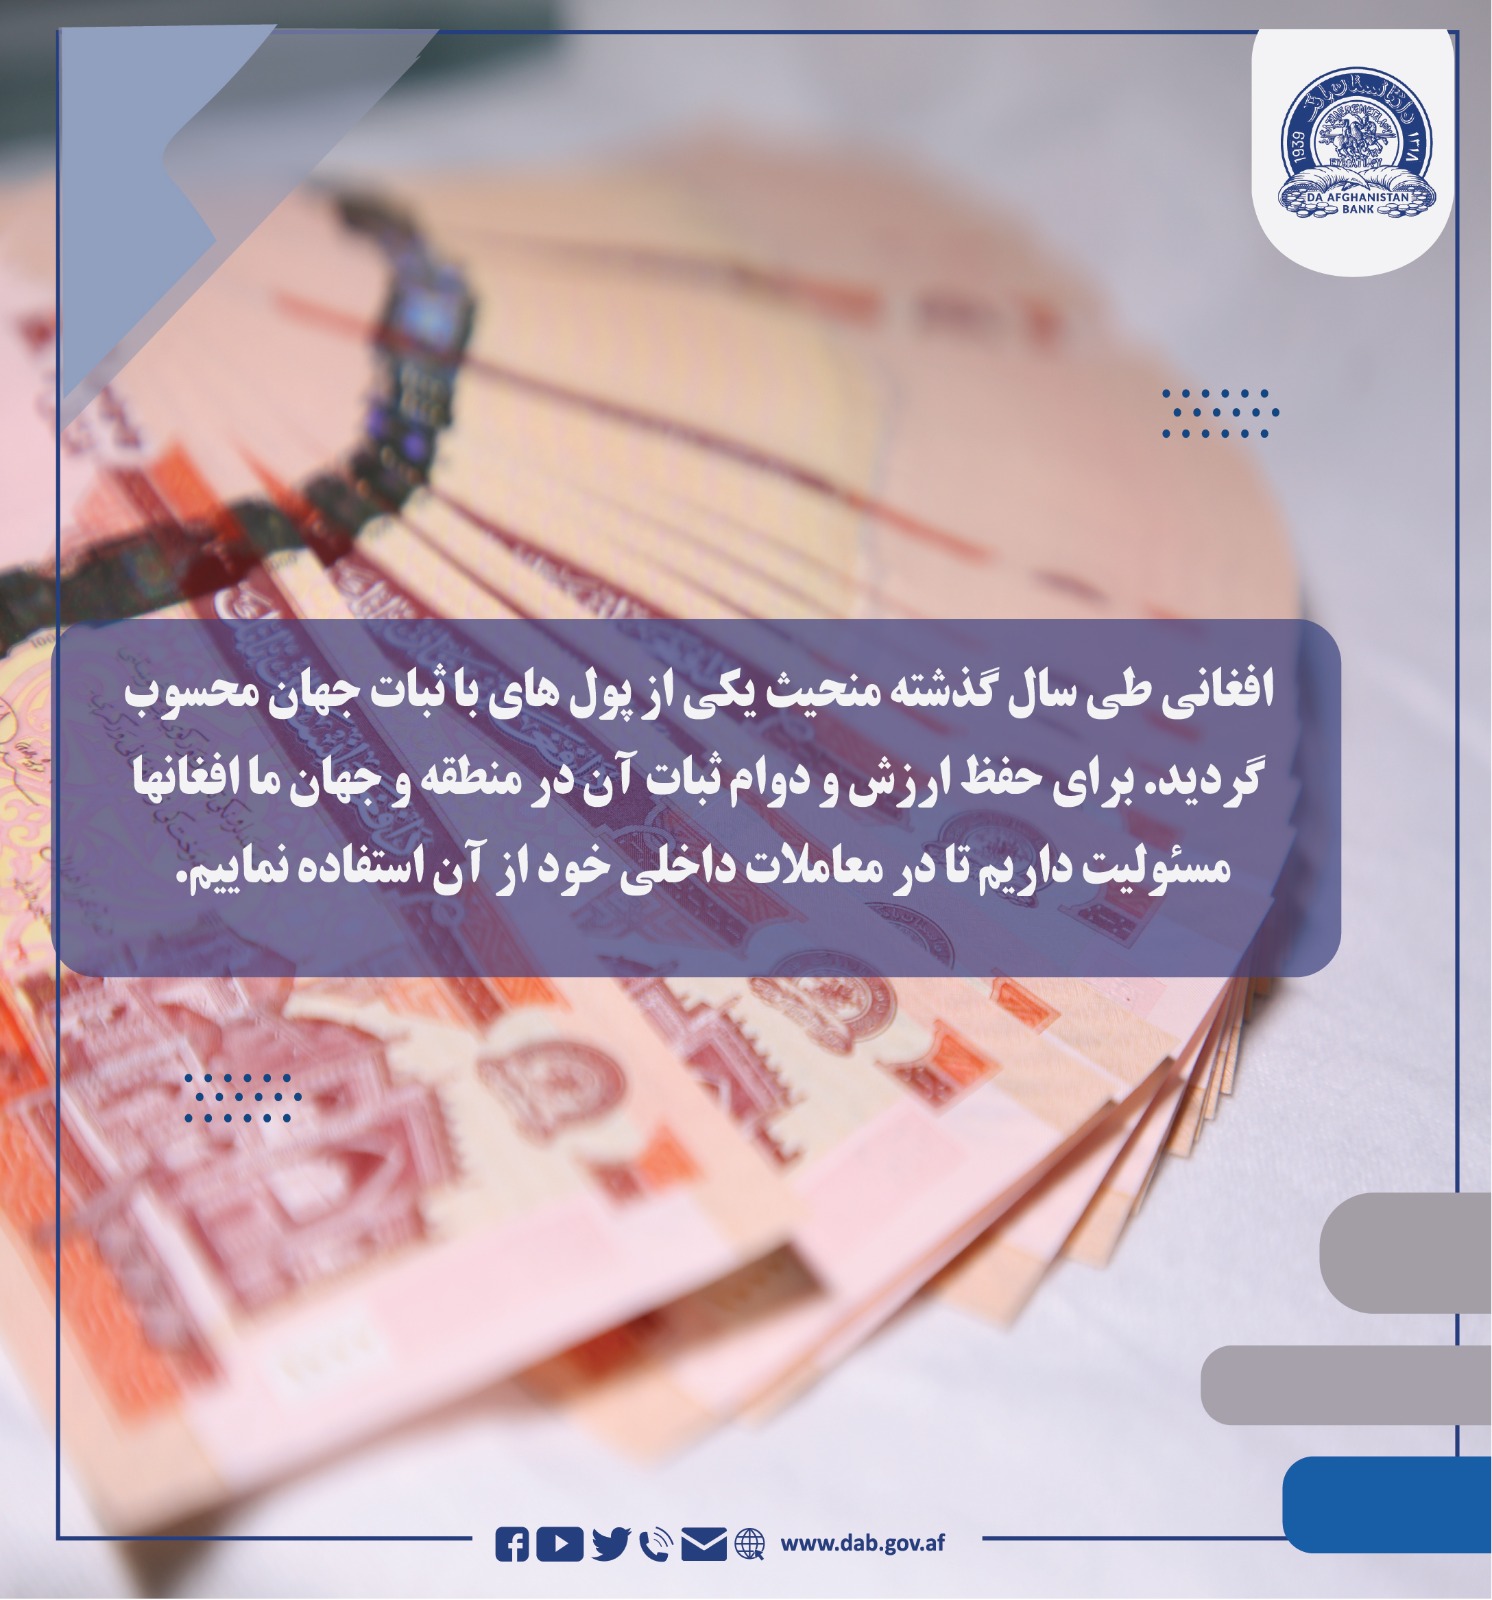 افغانی طی سال گذشته منحیث یکی از پول های با ثبات جهان محسوب گردید